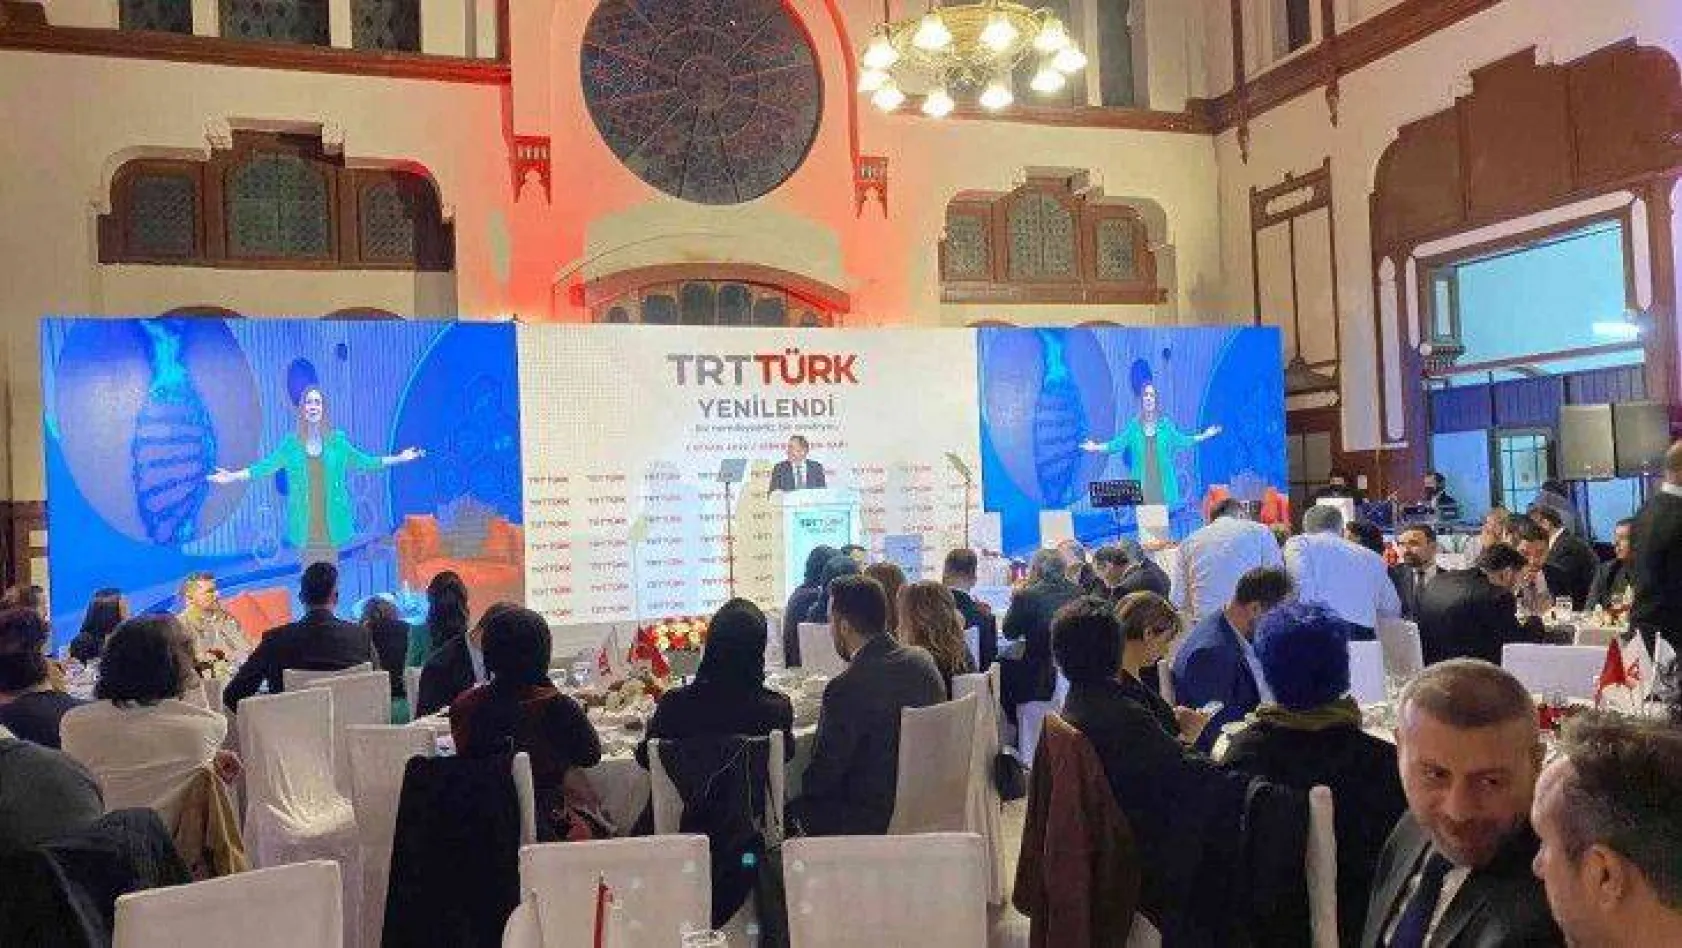 TRT Türk yeni yayın dönemine başladı